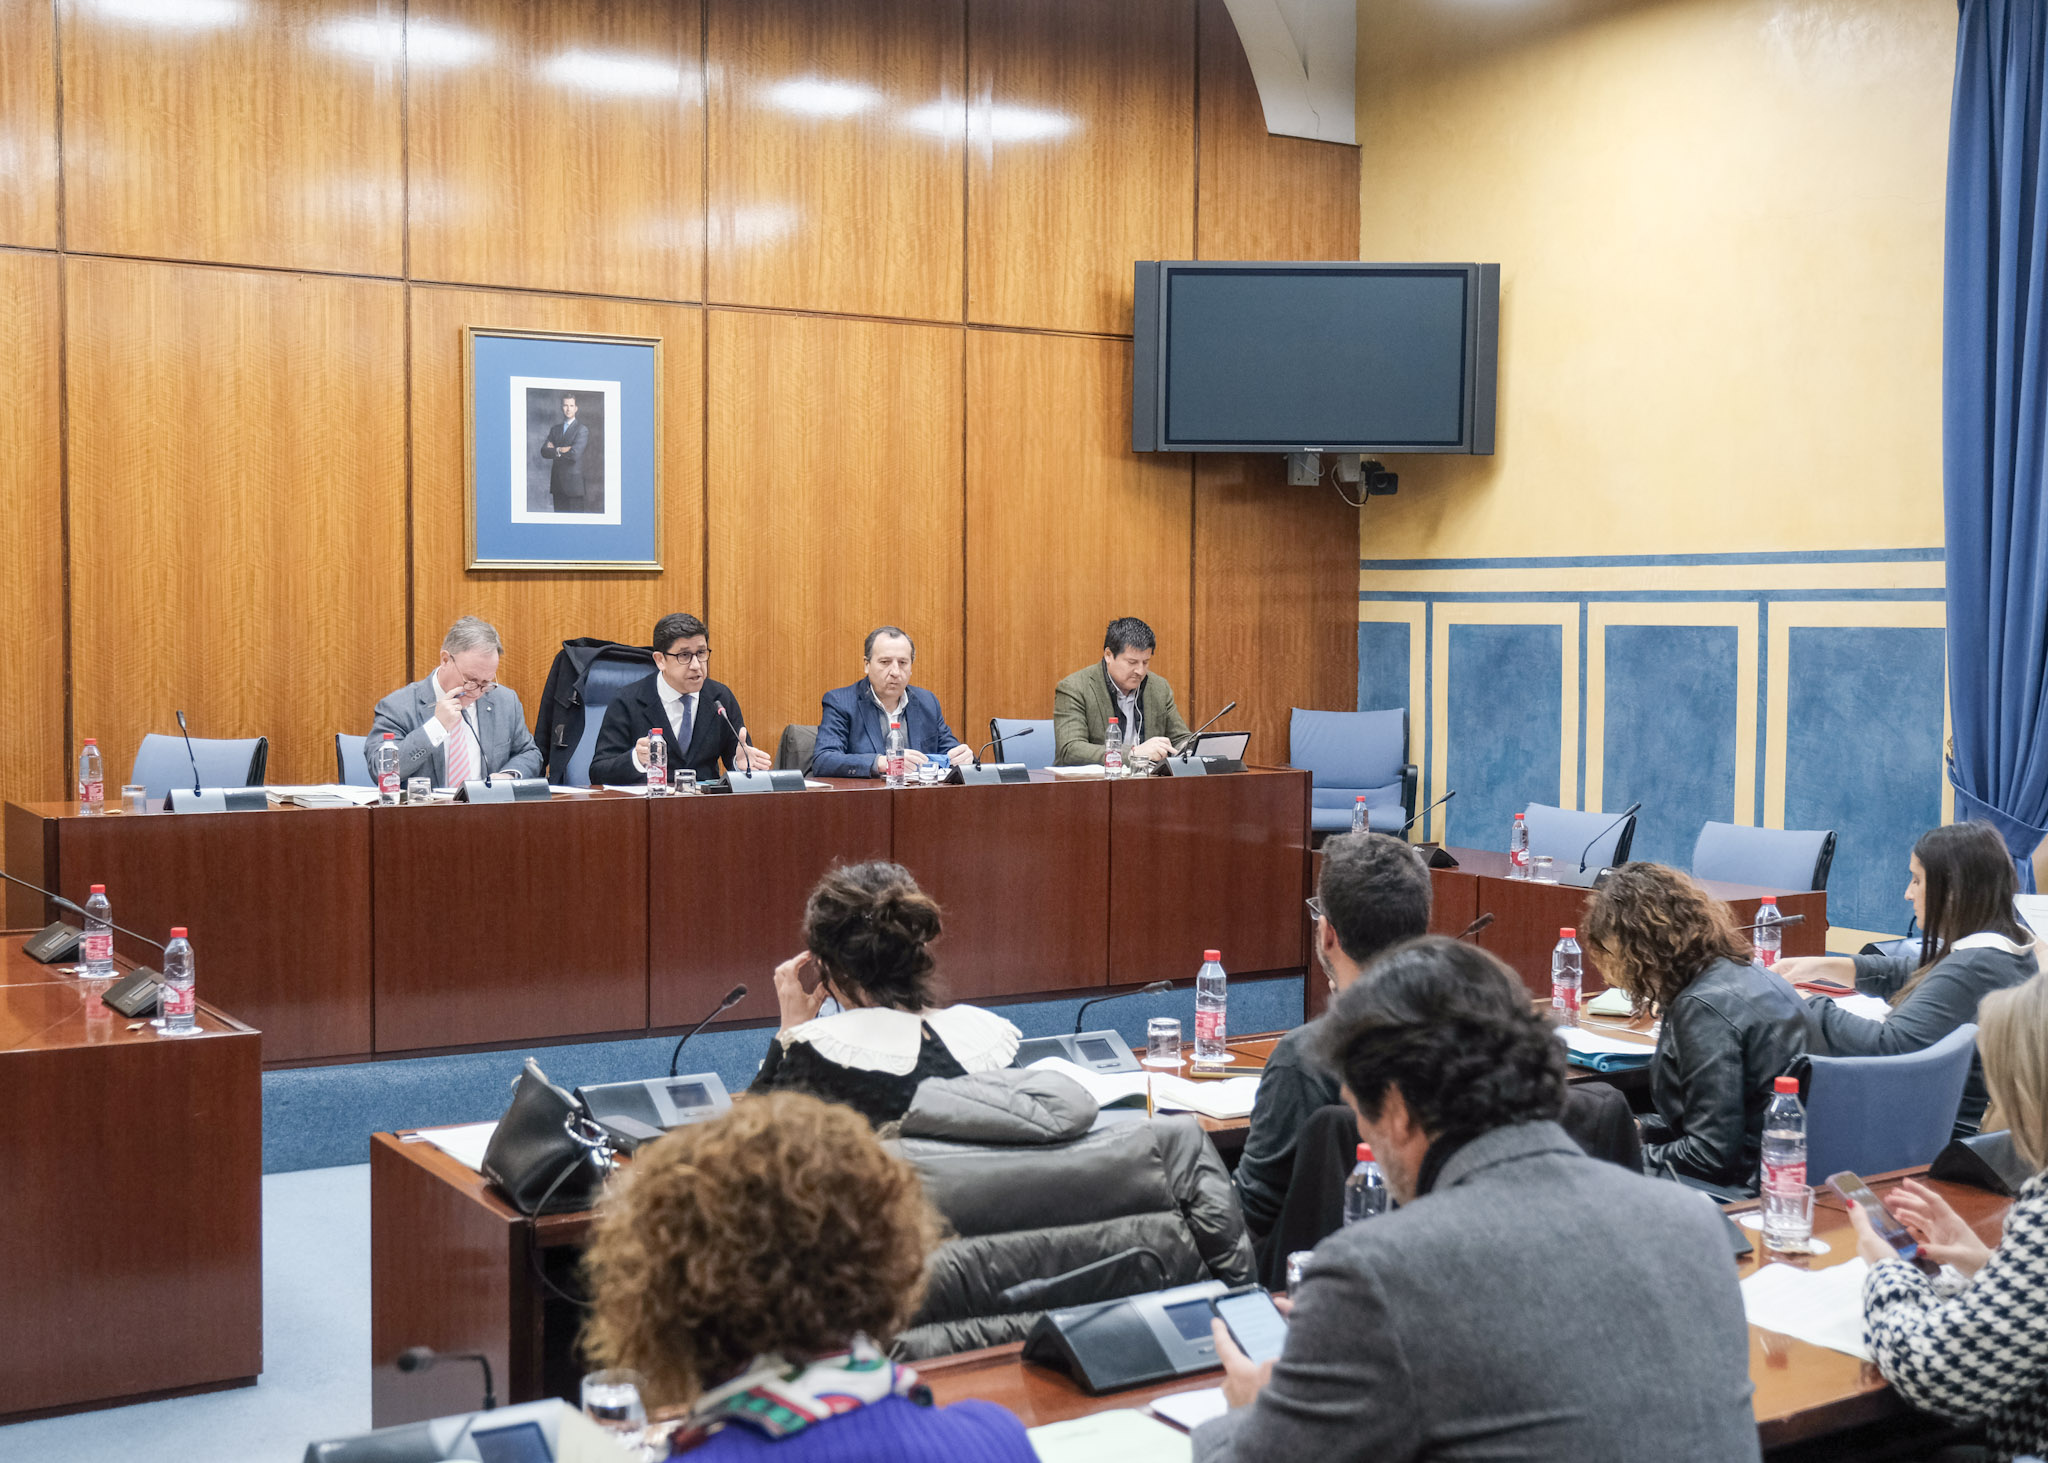  La Comisión de Salud y Consumo se reune para elaborar el dictamen sobre el Proyecto de Ley de regulación de la Atención Temprana en la Comunidad Autónoma de Andalucía 